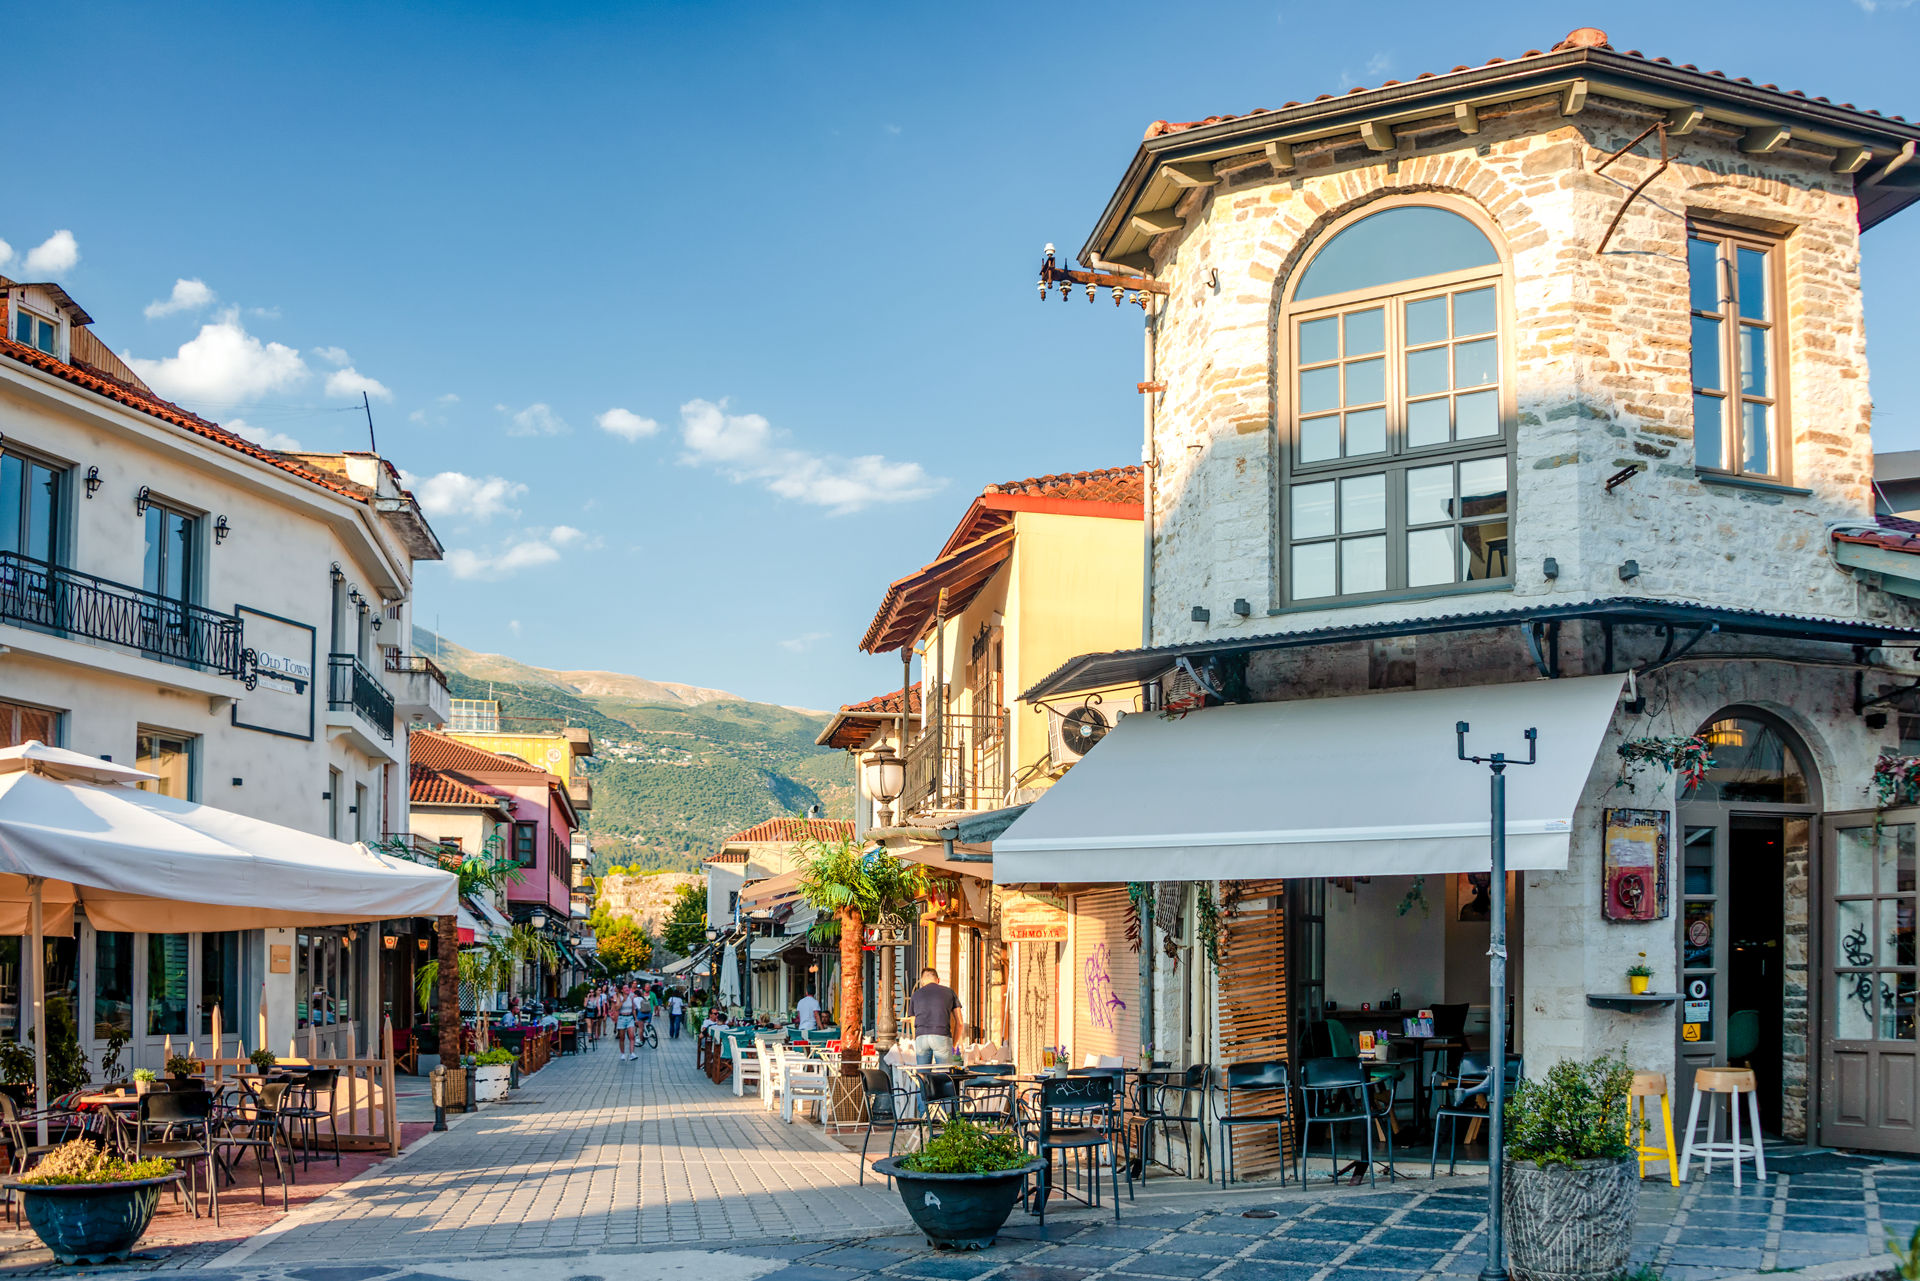 Day 2 Meteora – Ioannina – Gjirokaster (Albania)